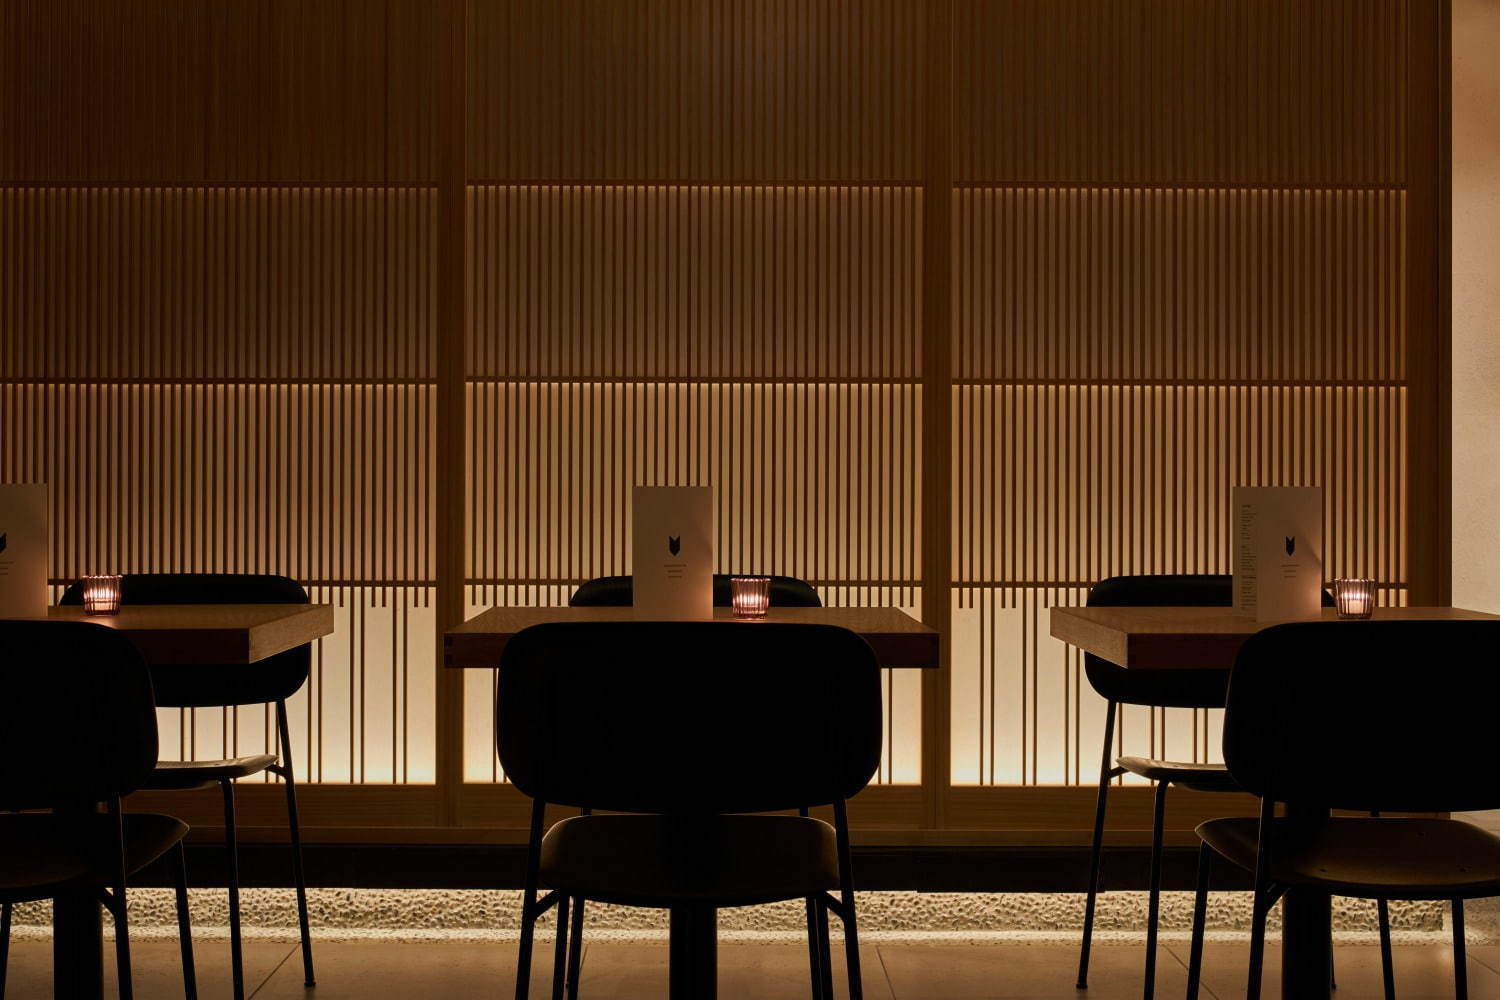 CAFE KITSUNE Aoyama การตกแต่งภายในได้รับการออกแบบโดยคุโรกิ มาซายะ (Masaya Kuroki) สถาปนิกชาวญี่ปุ่น และเป็นผู้ร่วมก่อตั้ง MAISON KITSUNÉ 